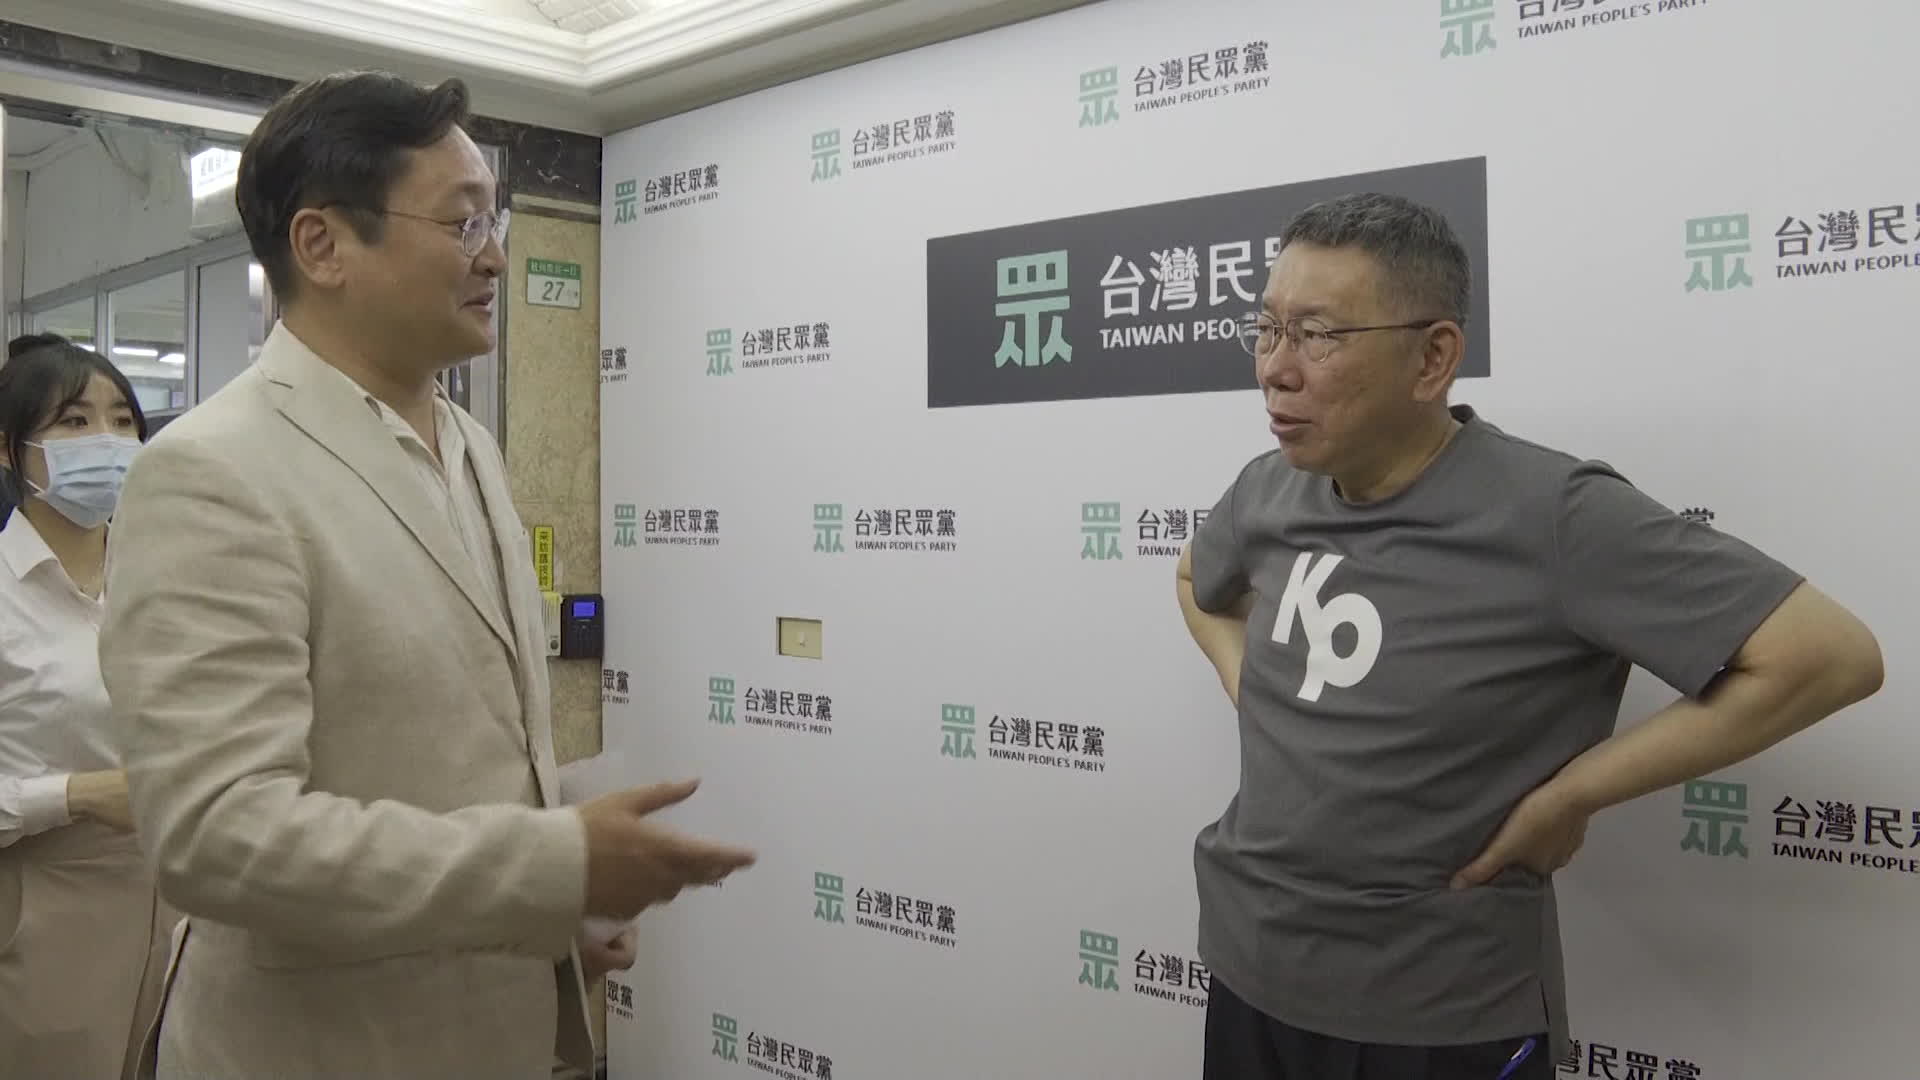 민중당 커원저 총통 후보(오른쪽)가 KBS 조성원 기자와 인터뷰 직전 담소를 나누고 있다. 소탈한 스타일, 현안들에 대한 막힘없는 의견 표명이 인상적이었다. (사진: 이창준 촬영기자)